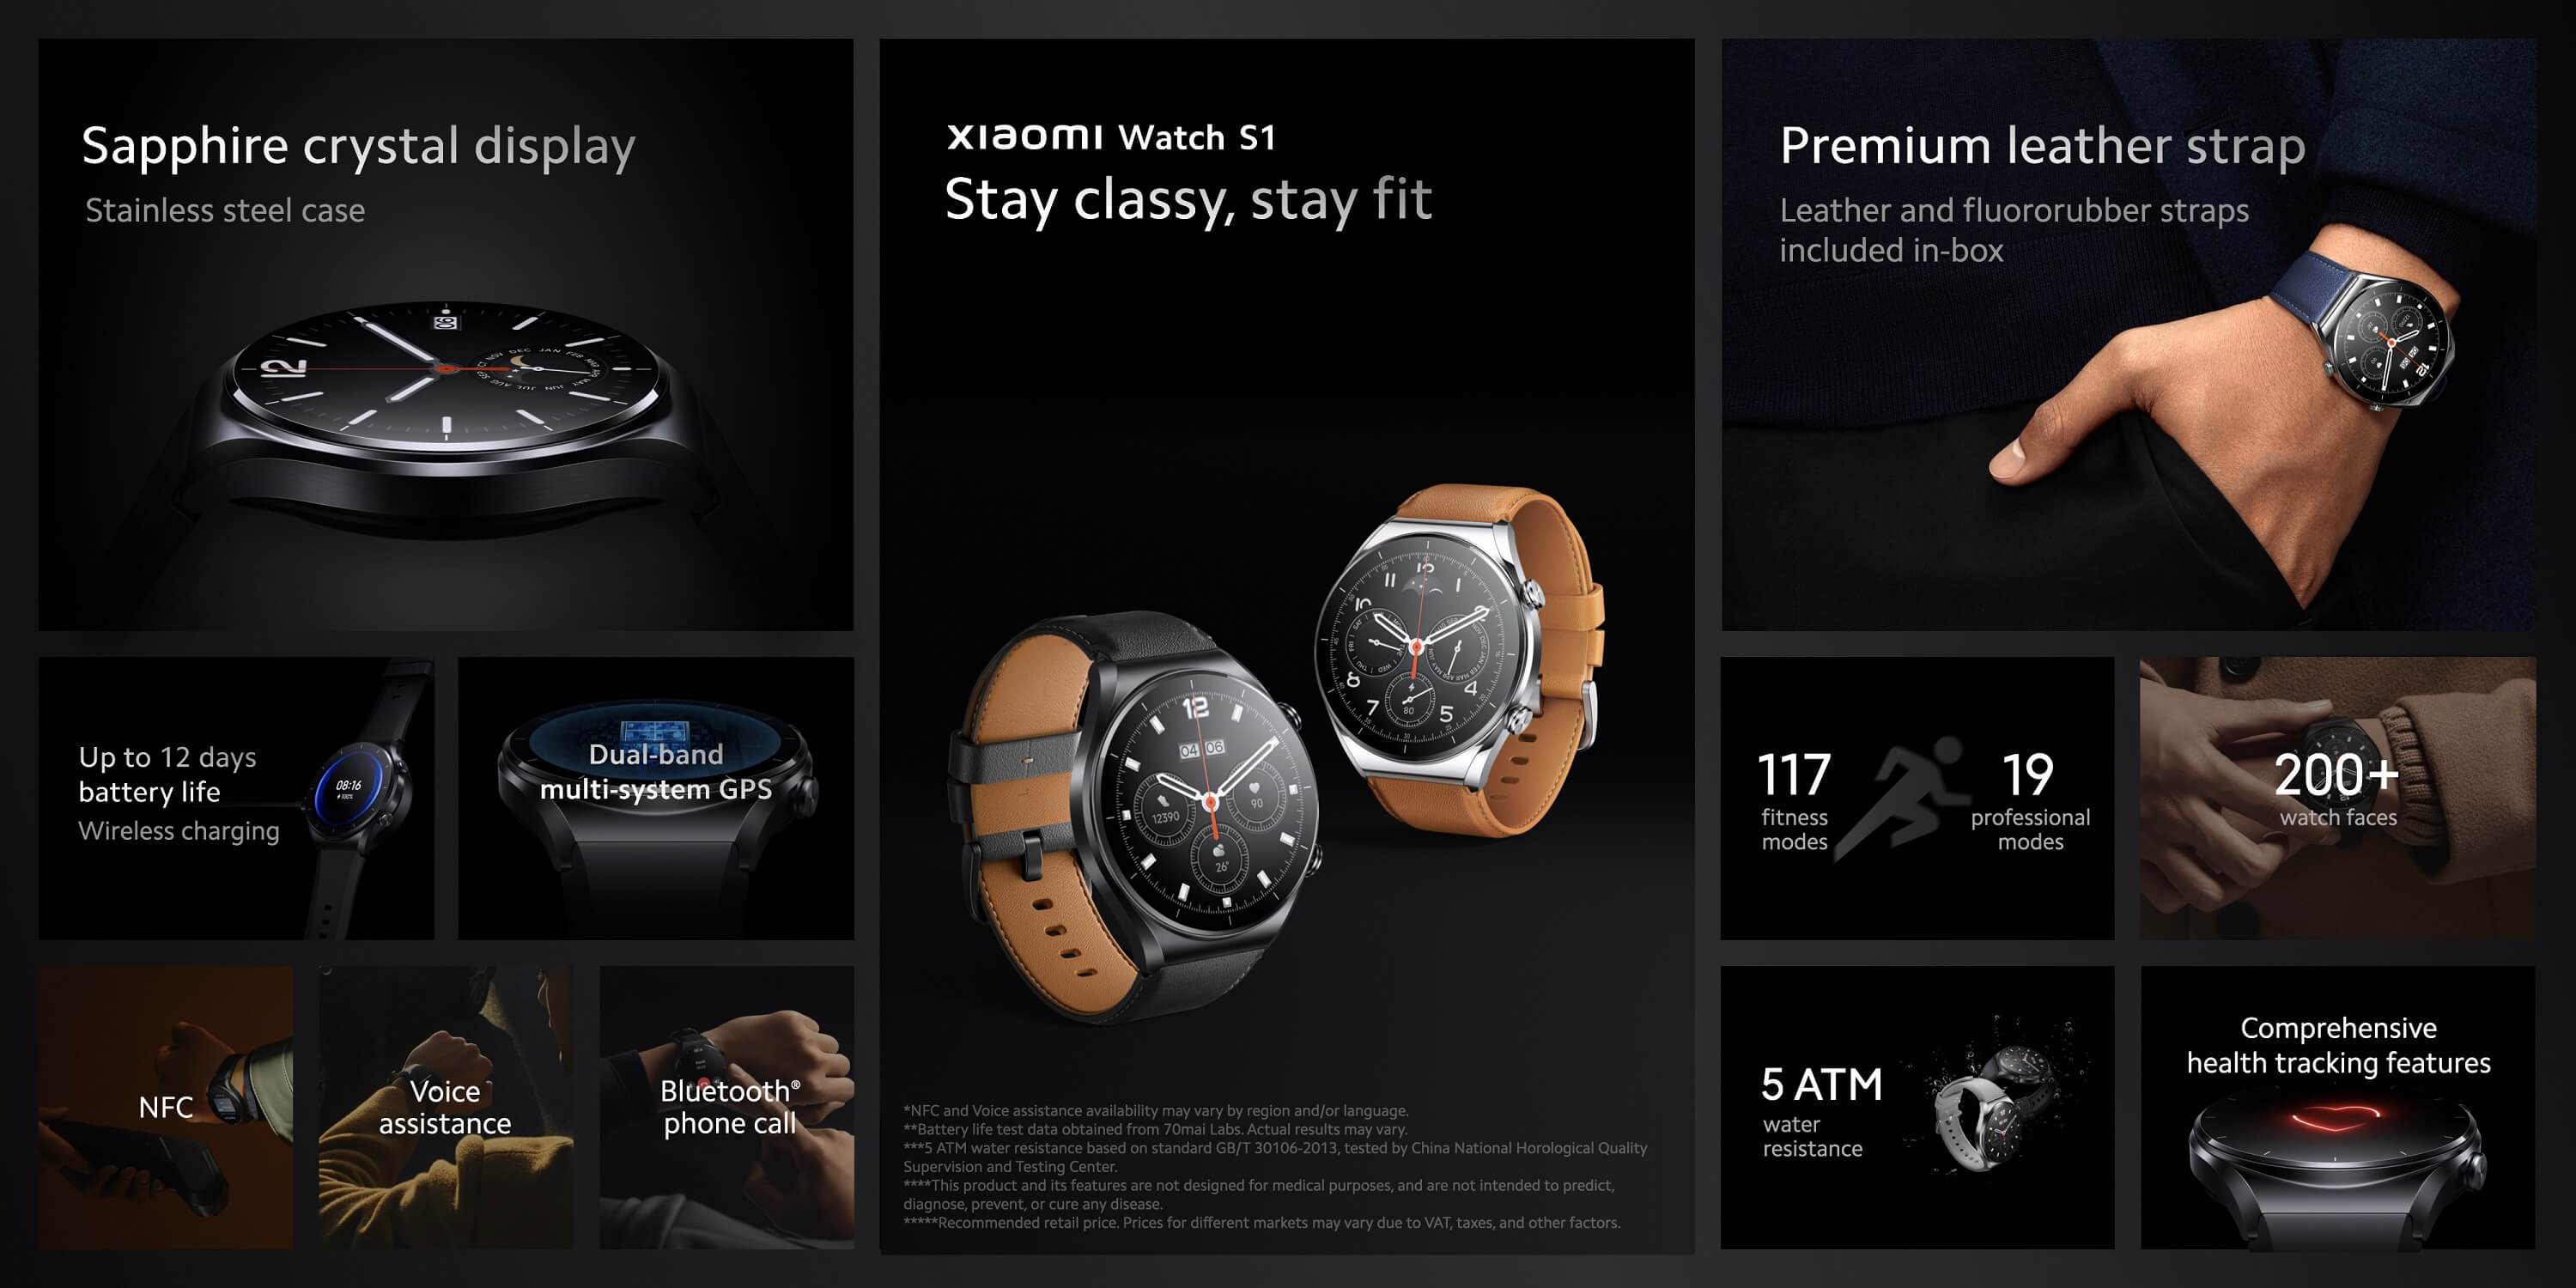 Xiaomi Watch S1 features